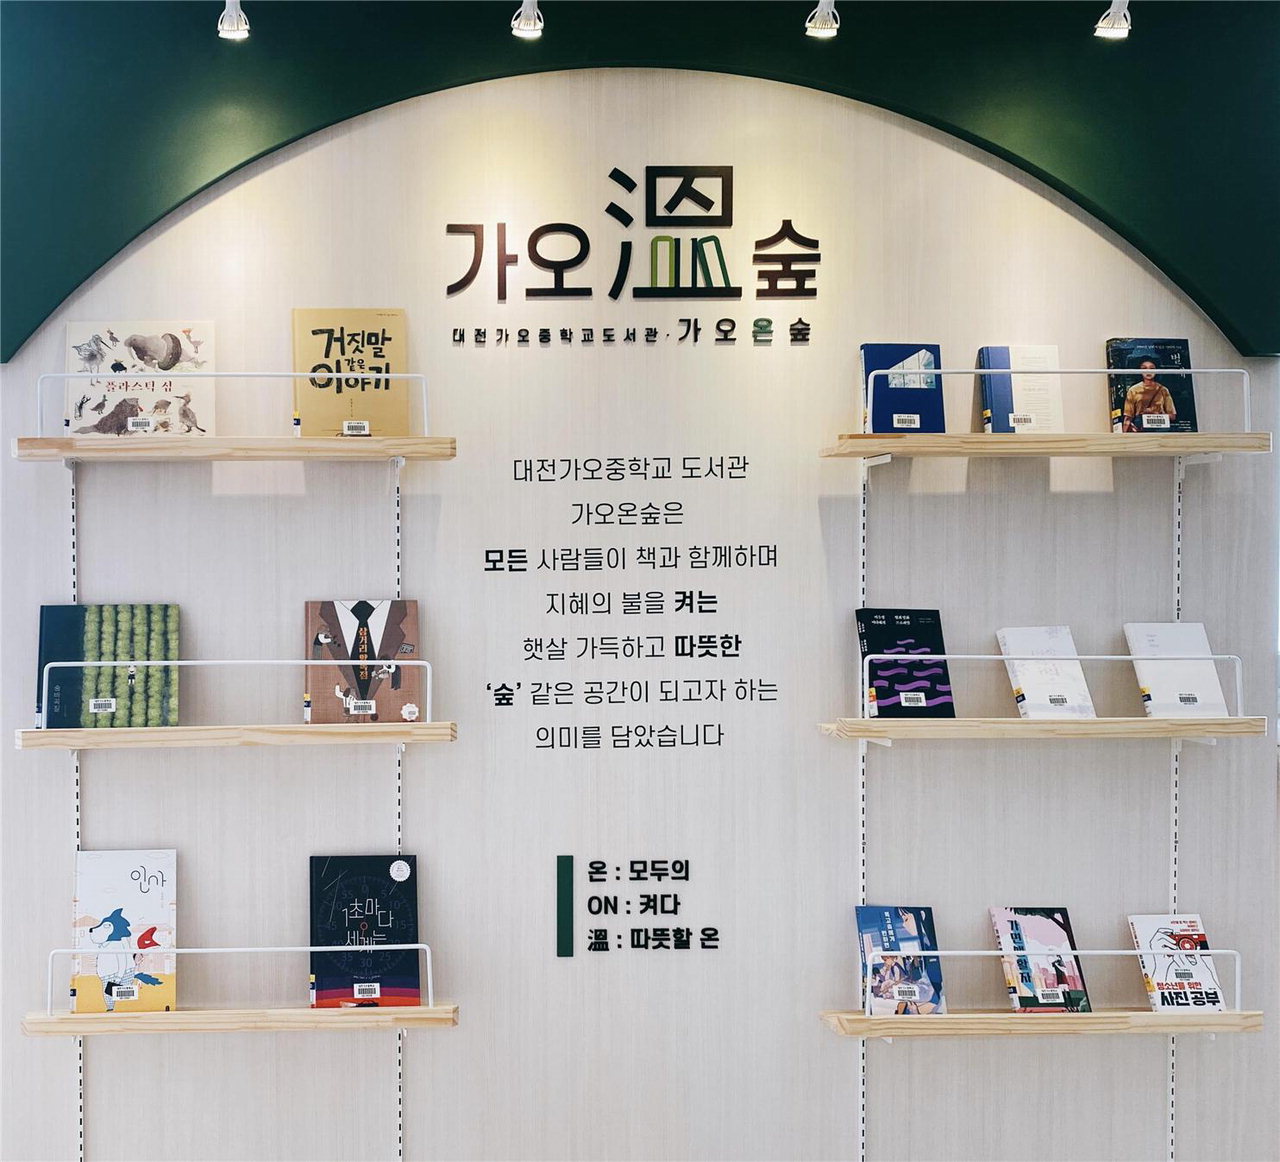 대전가오중학교가 학교도서관 이름을 '가오온숲'으로 바꾸고 다양한 독서 큐레이션을 개방적으로 공유할 수 있도록 공간에도 변화를 줬다. / 대전교육청 제공